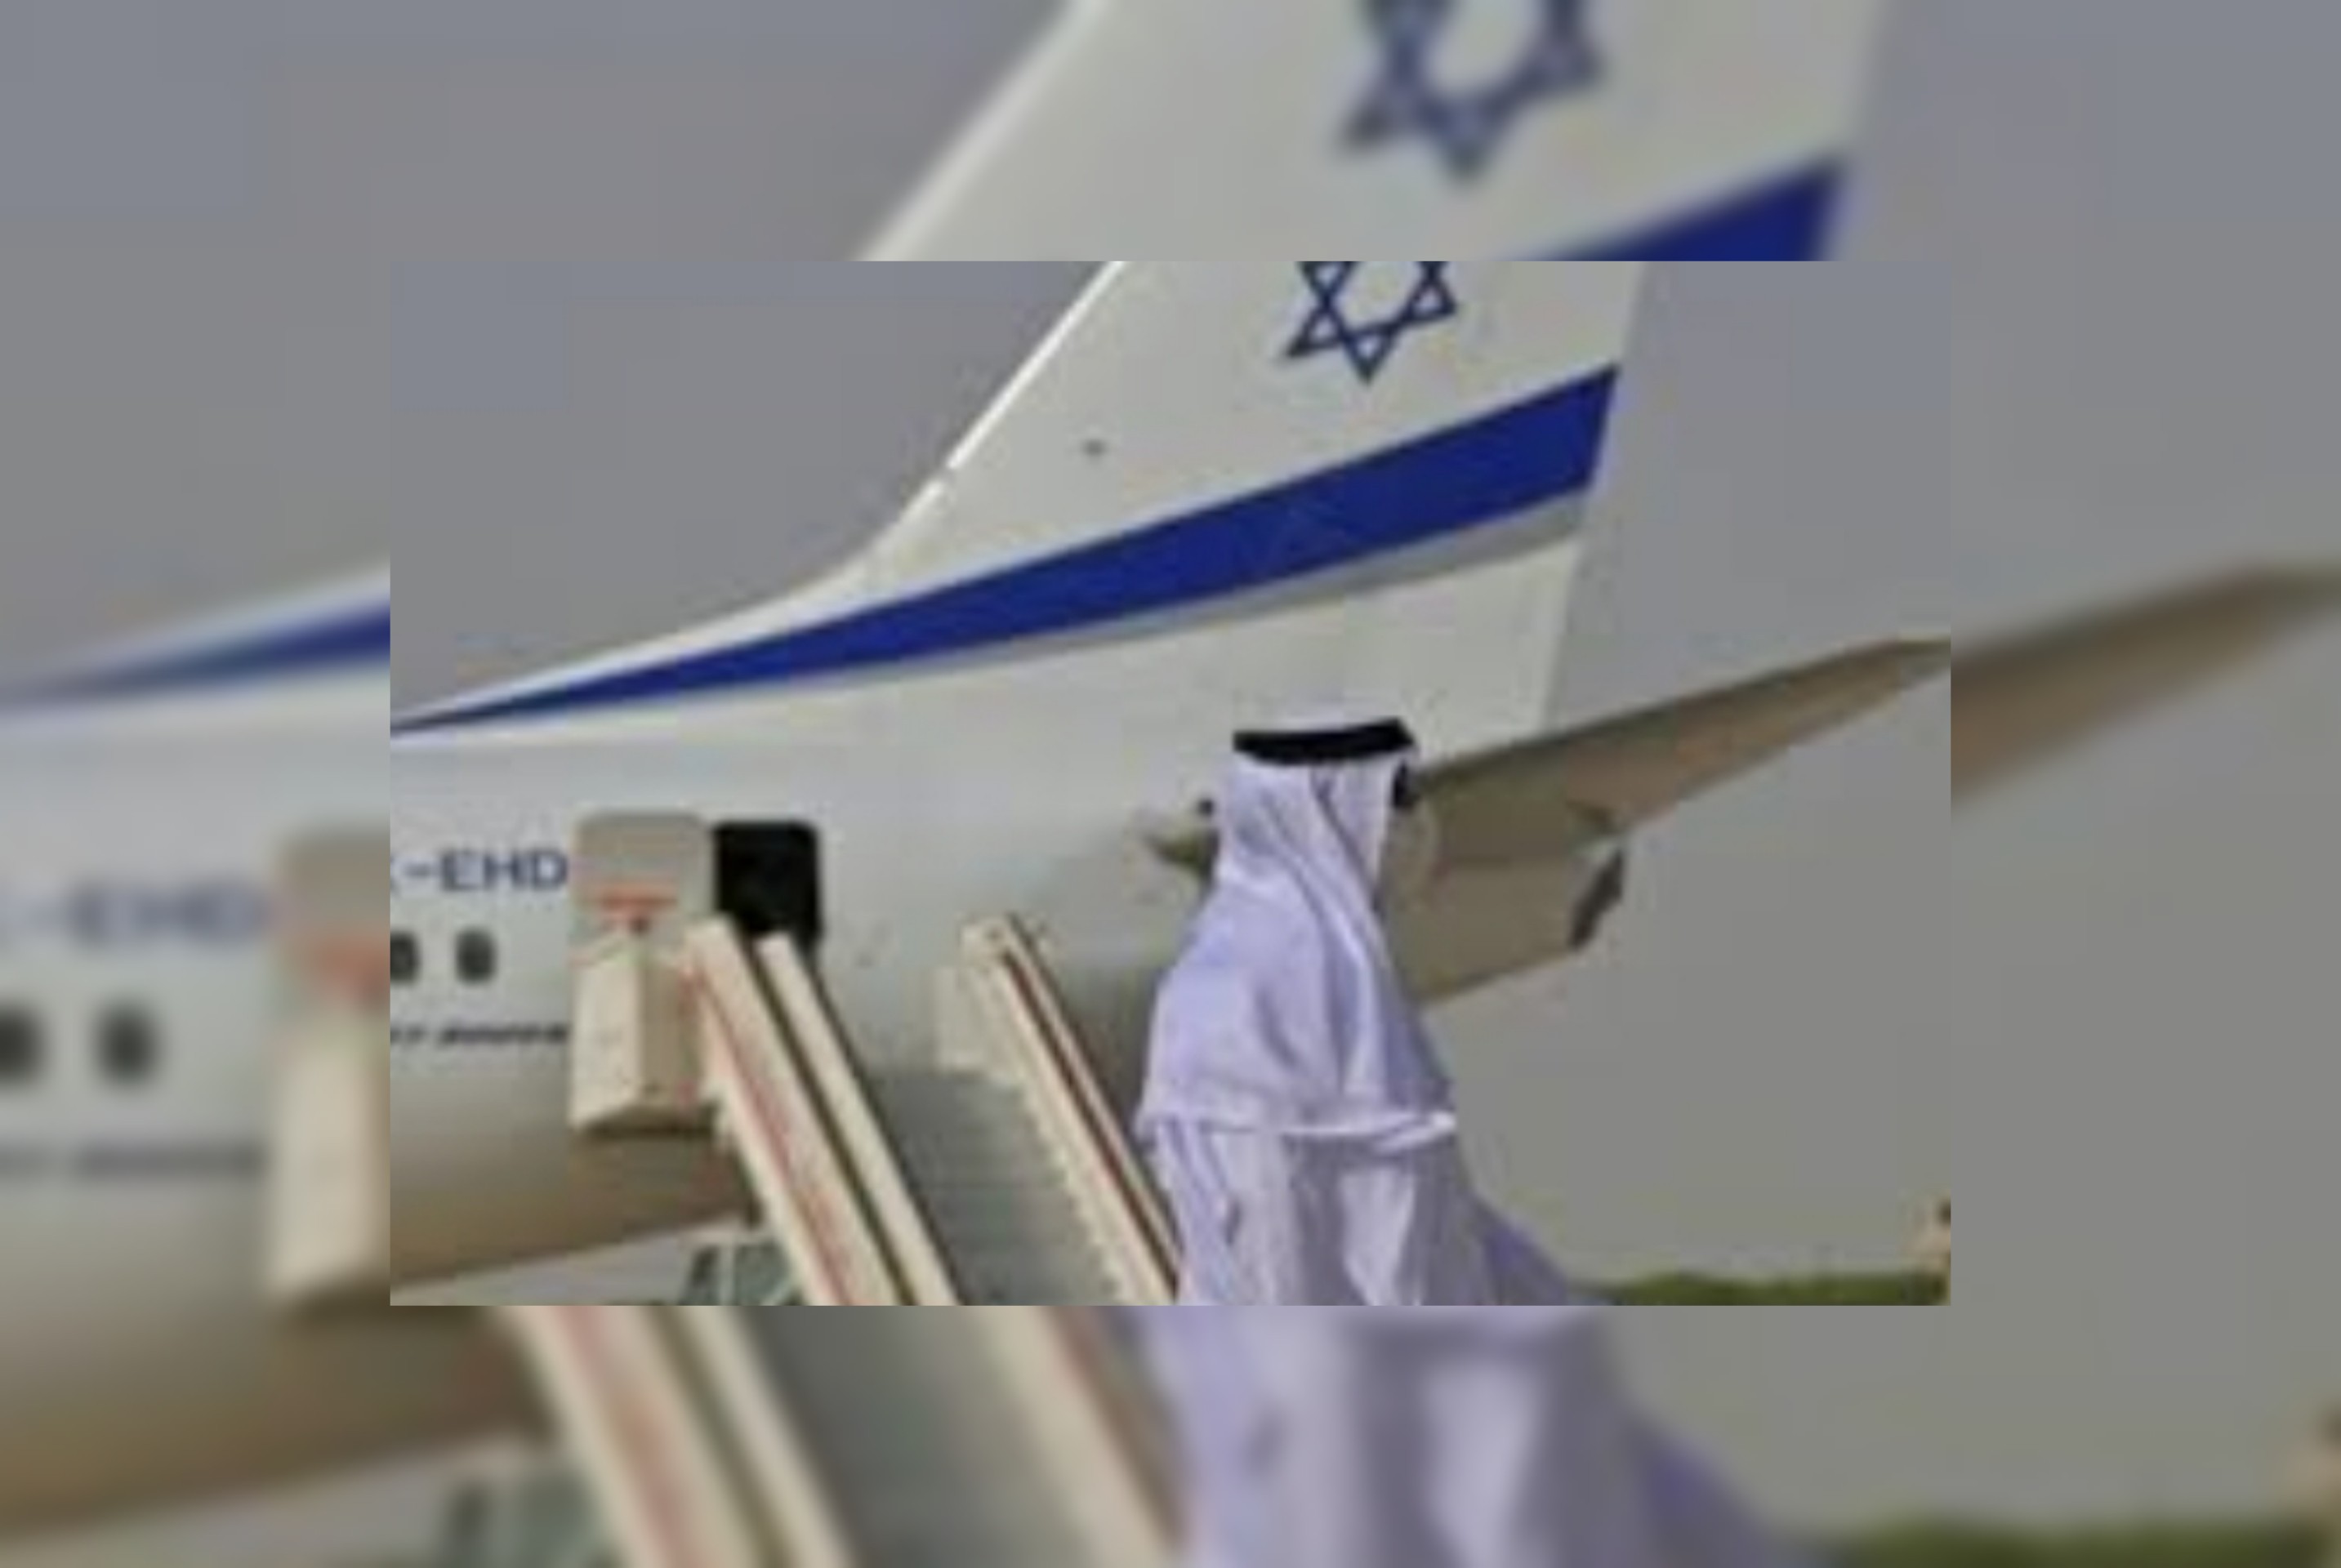 بالصور / تقرير إسرائيلي : طائرة إسرائيلية تحط في الرياض بعد مكوثها في عمّان